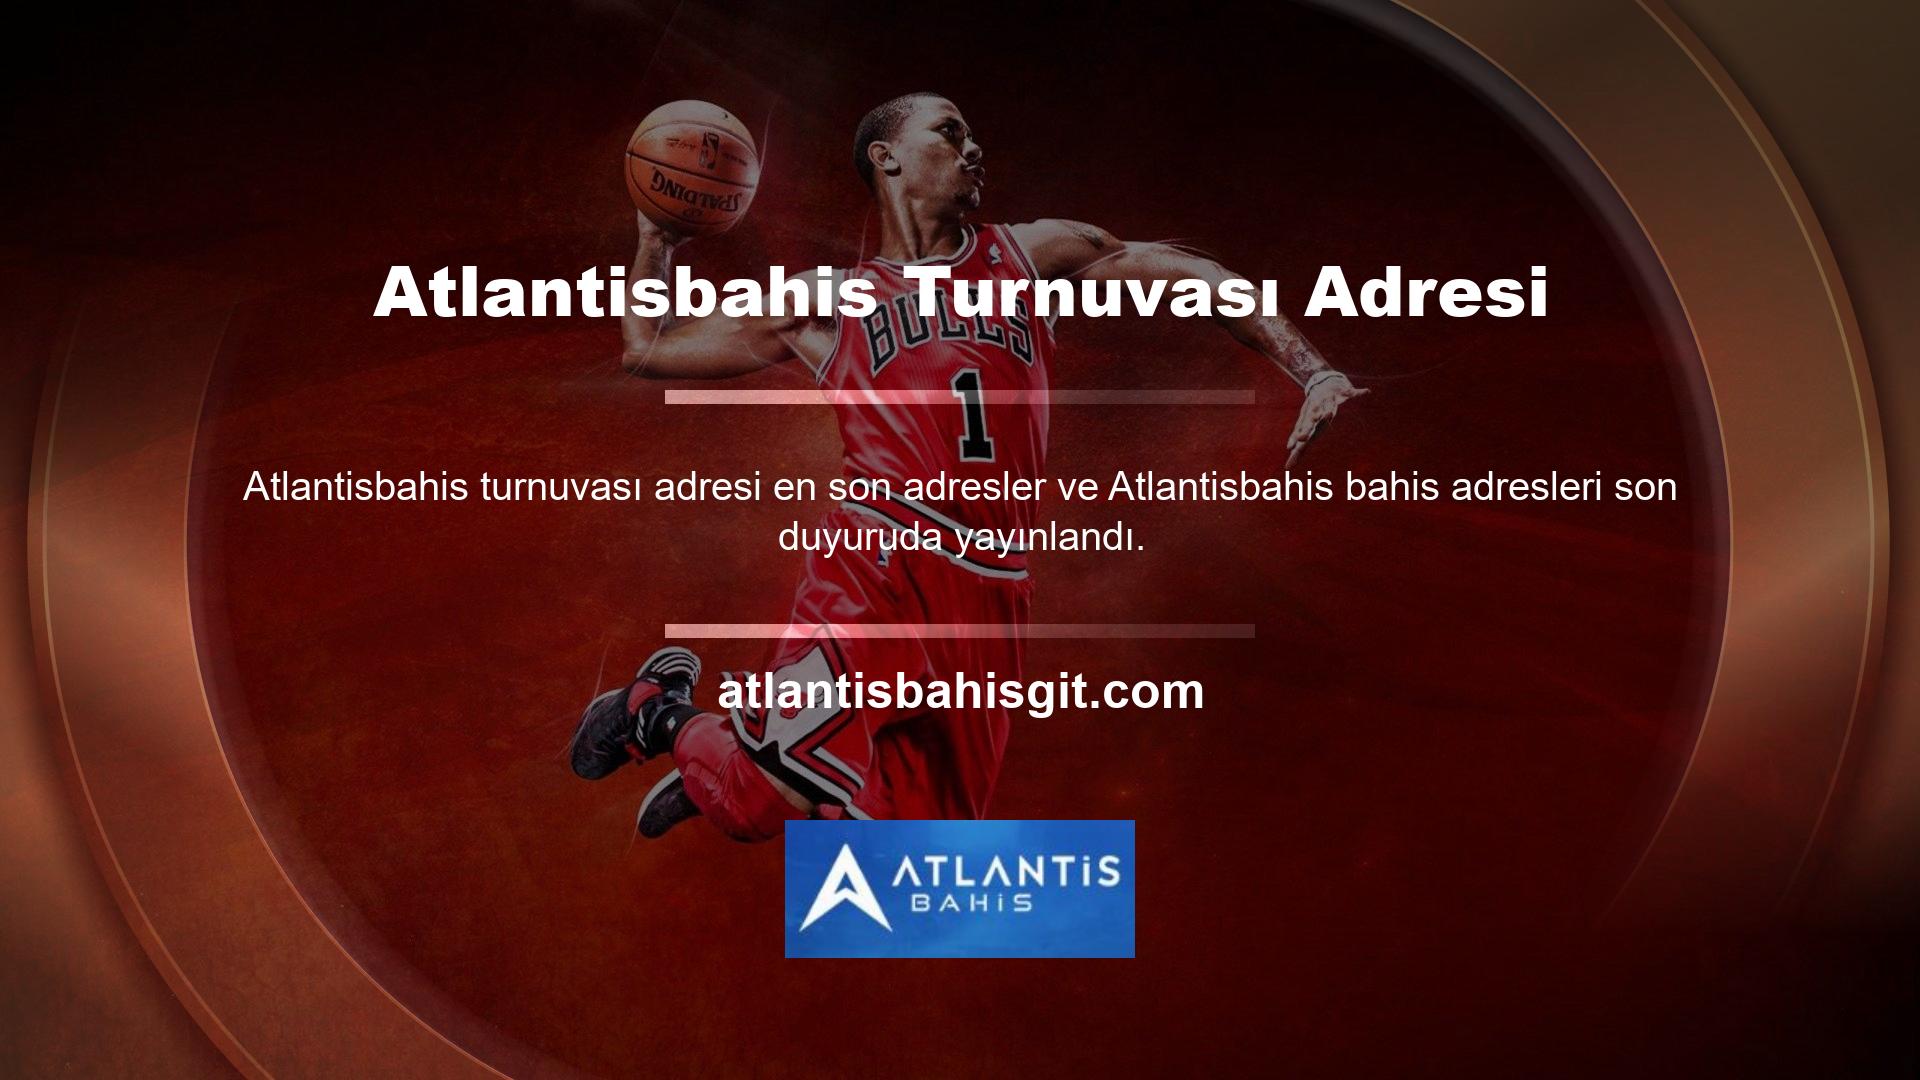 Sorun yaşamamak için reklamlarla güncellenen Atlantisbahis bahis sitesi, Türkiye’den katılıma izin verecek şekilde güncellendi